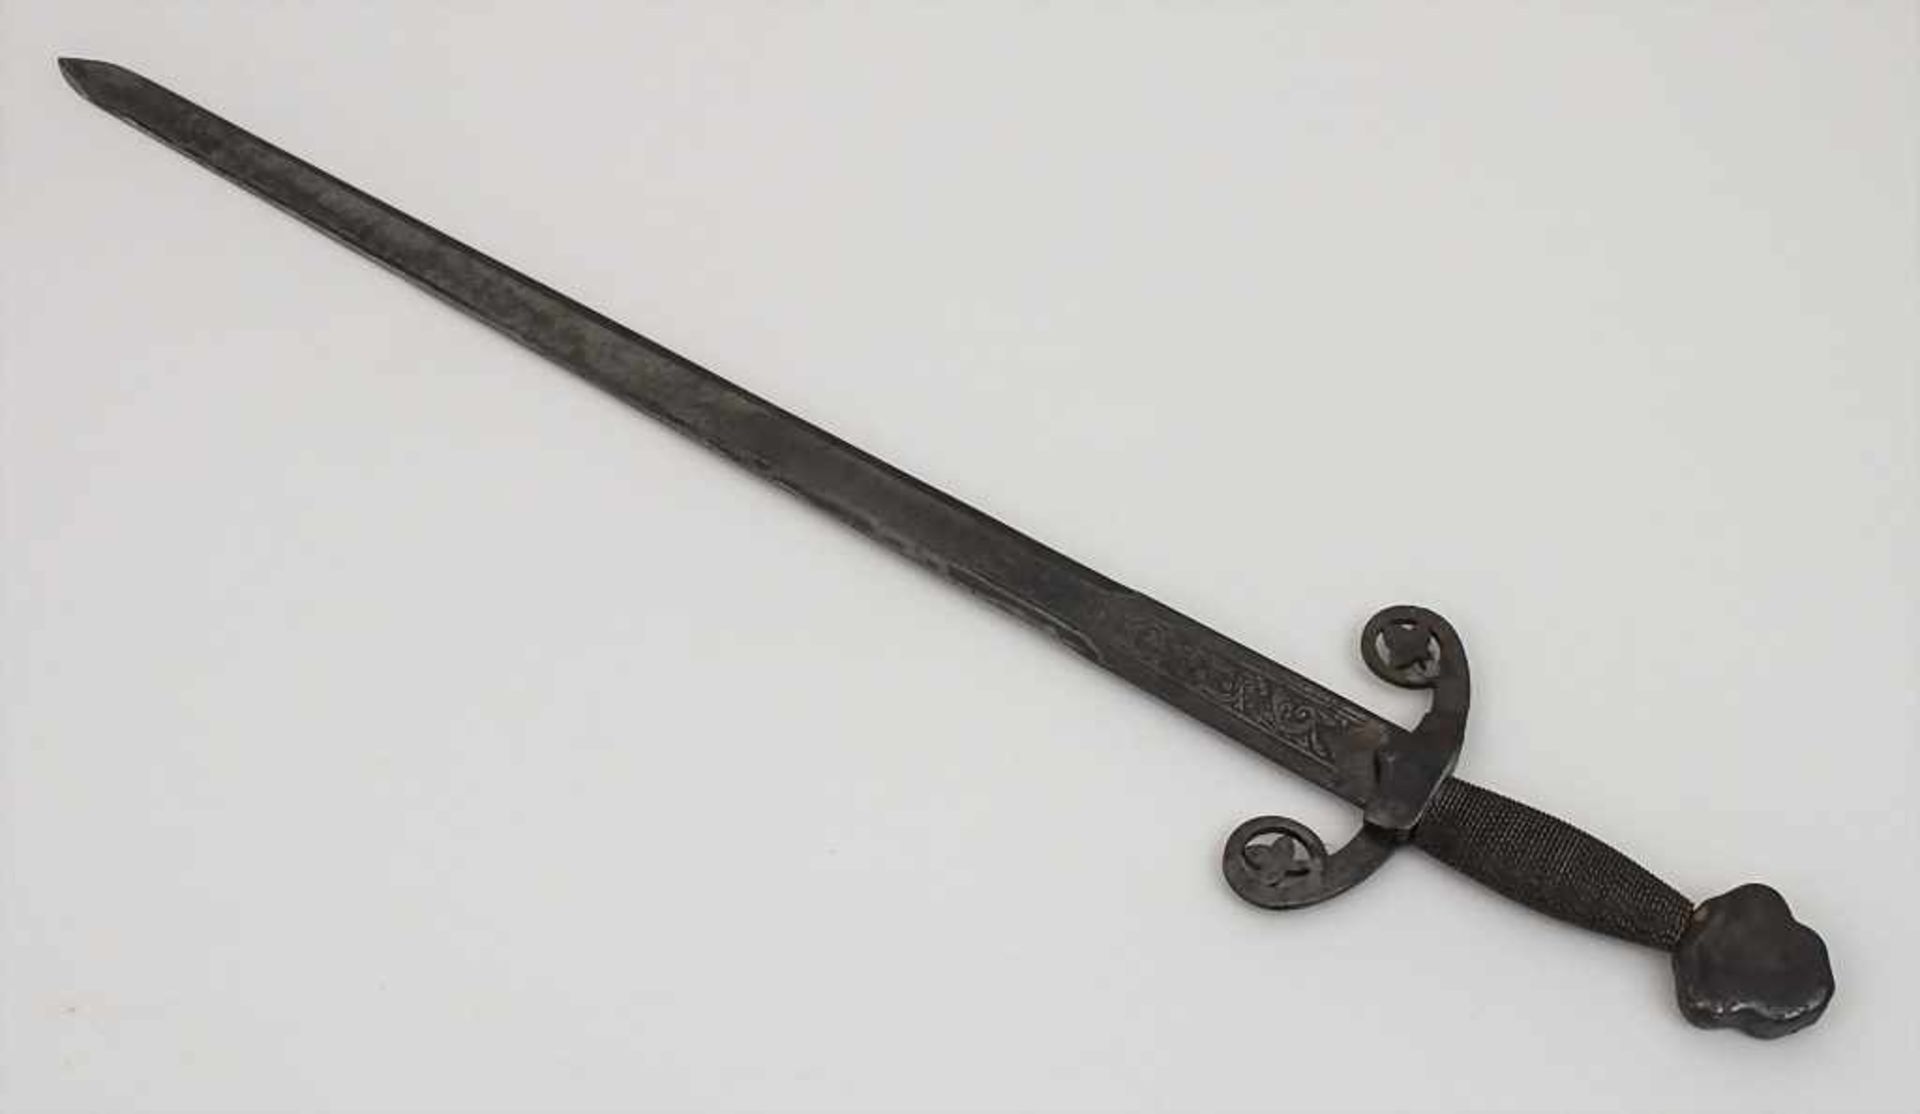 Spanischer Degen, Toledo / A spanish sword, Replik Material: Stahl, mit ziseliertem Blatt, - Image 2 of 2